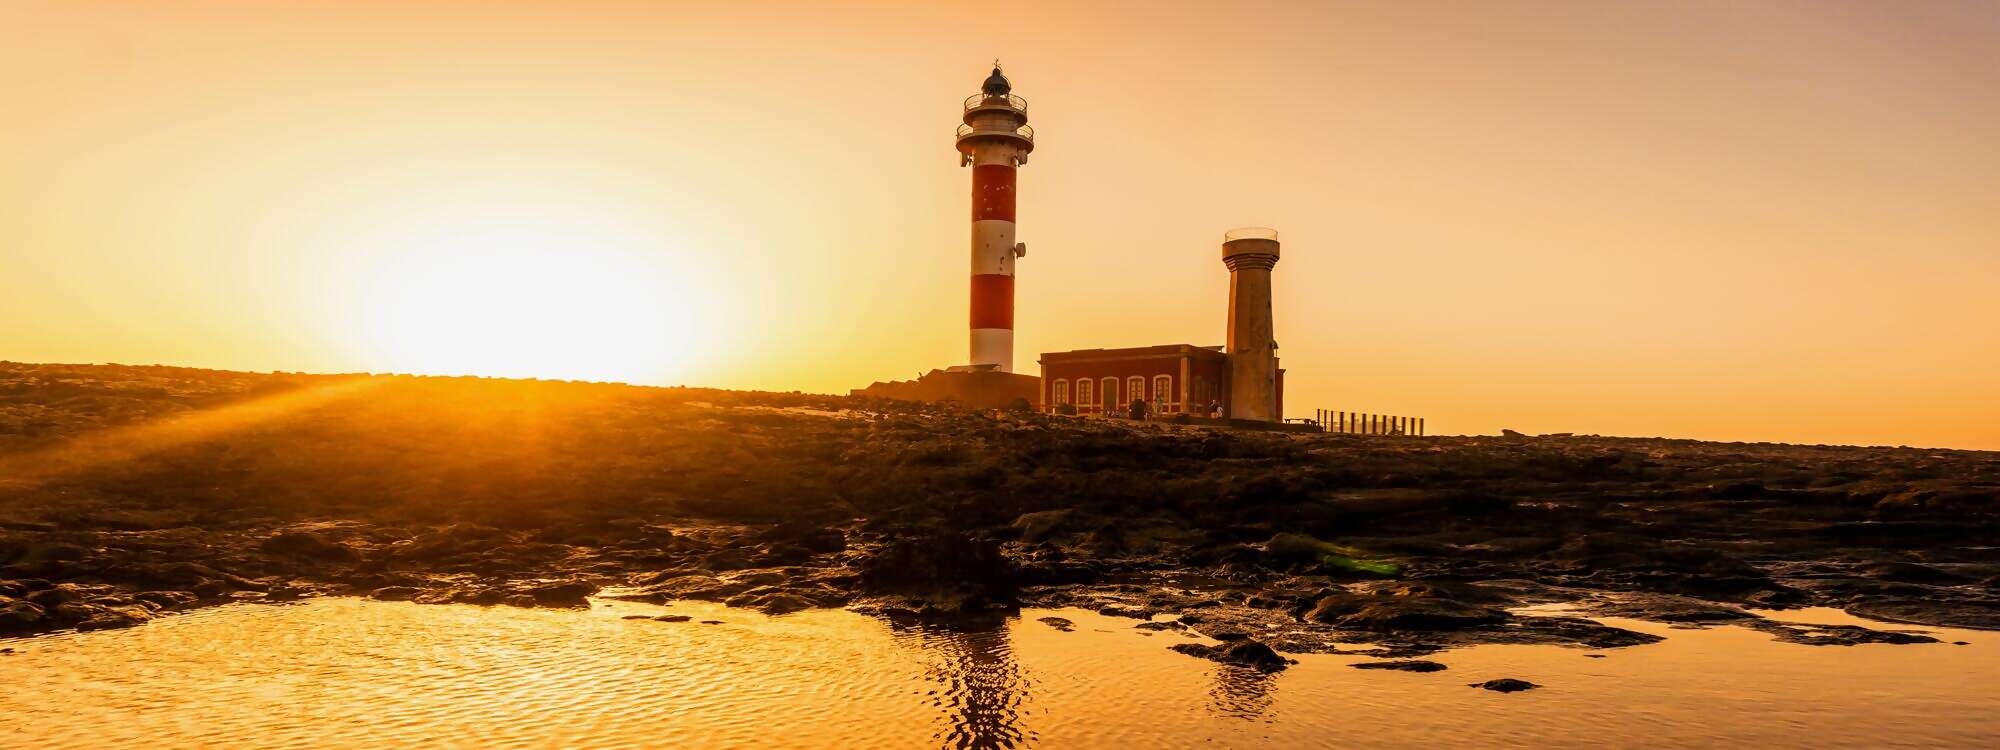 Toston Lighthouse am Meer mit dem reflektierten Leuchtturm Punta Ballena in der Naehe der Stadt El Cotillo - Fuerteventura